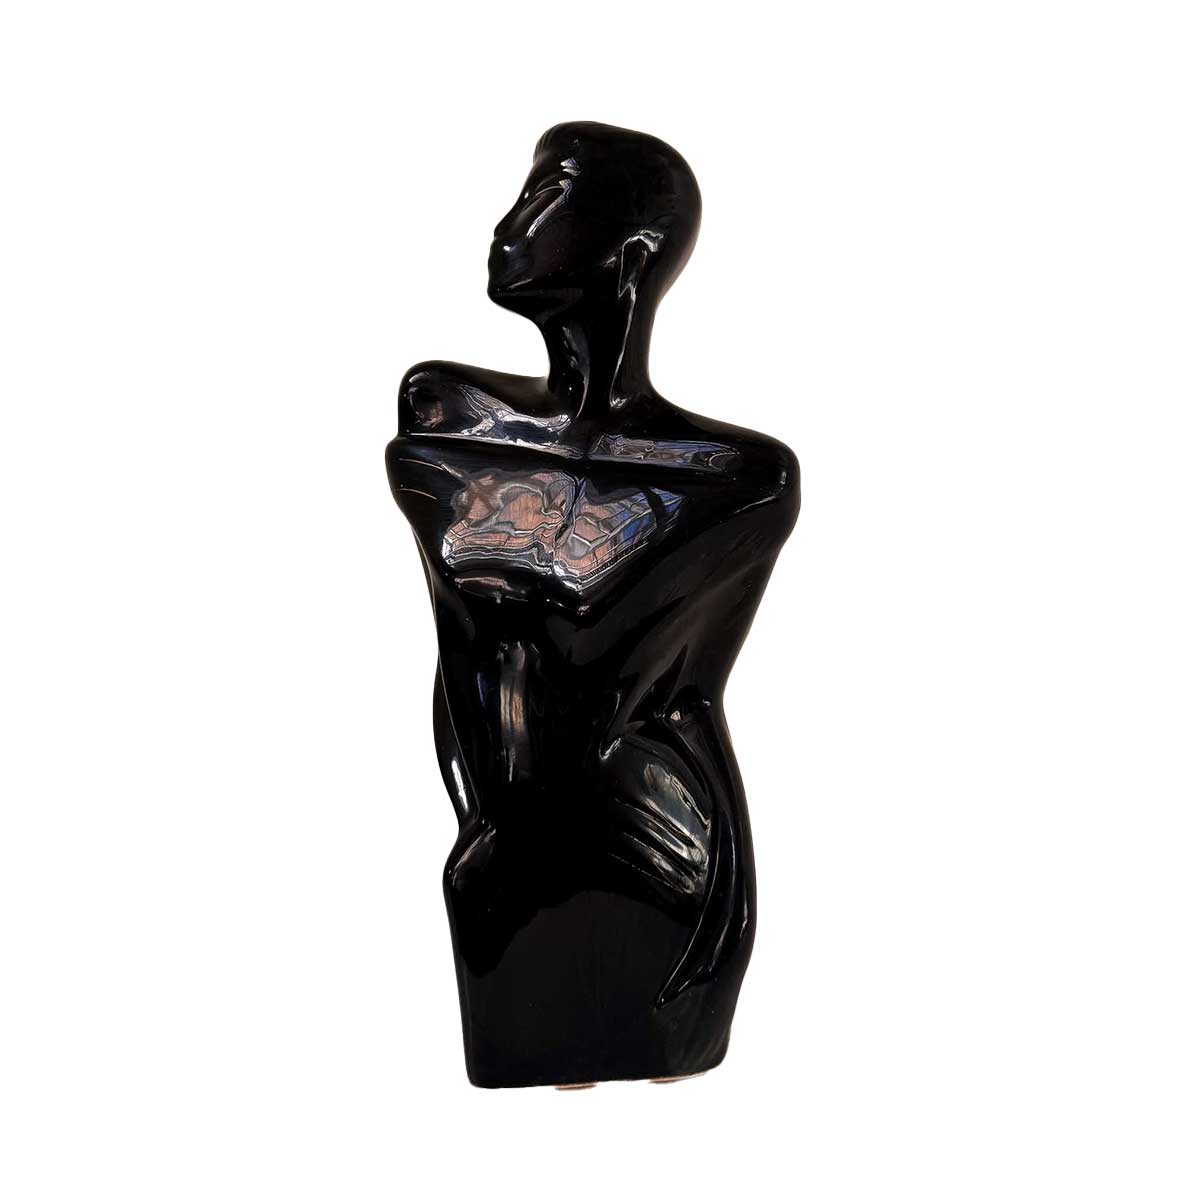 Vintage 80's Art Deco Female Figurine - Black